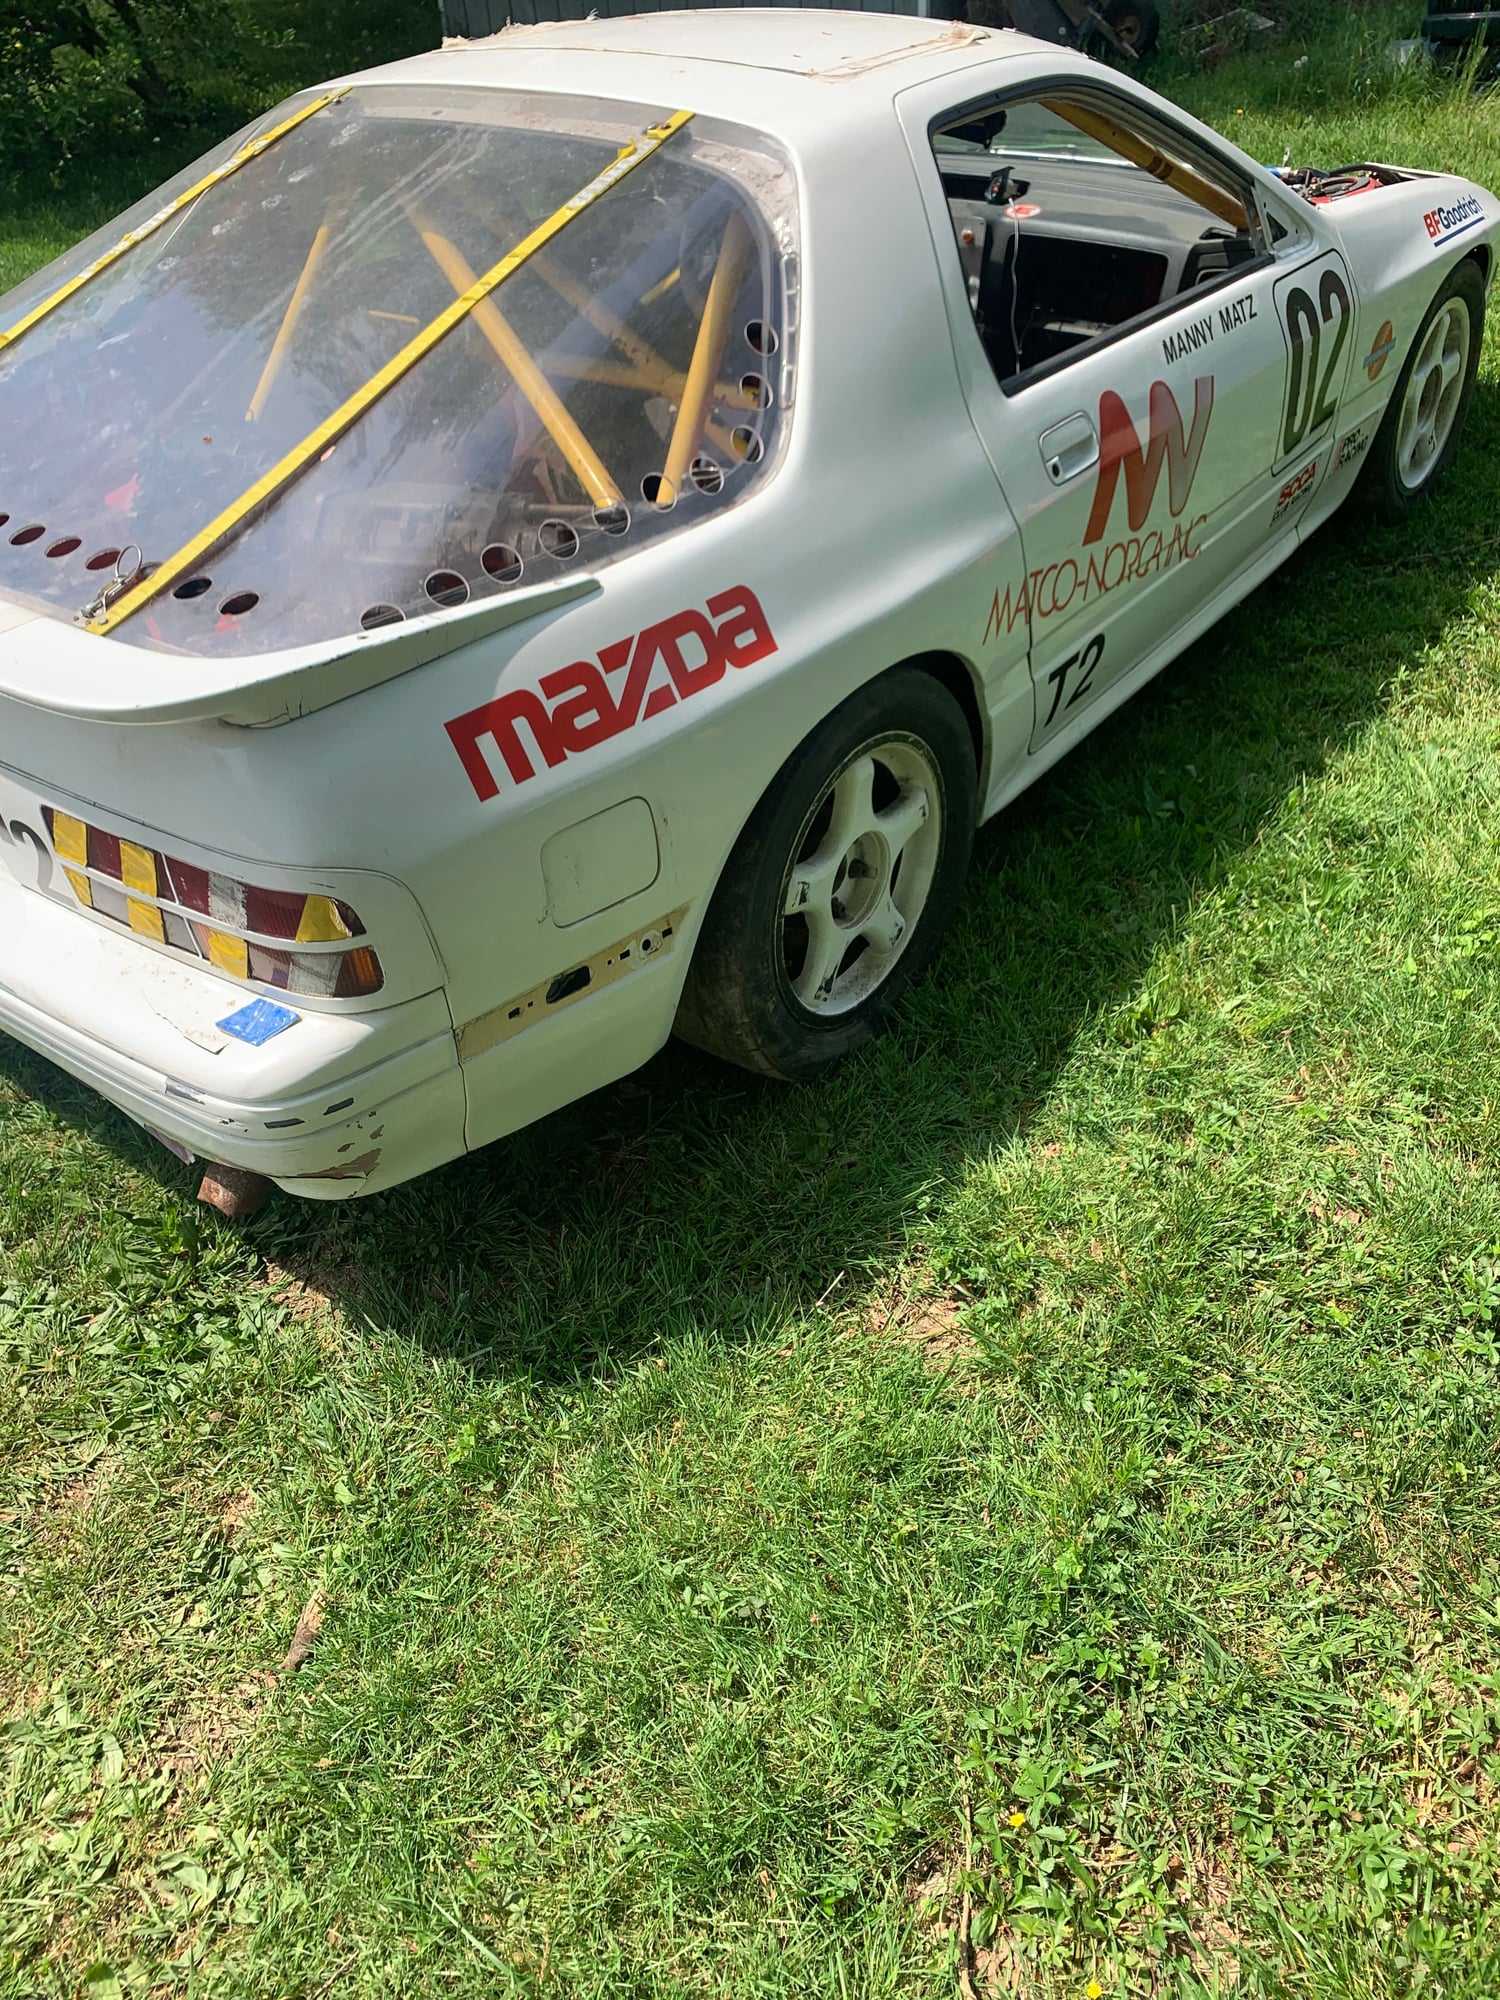 1988 Mazda RX-7 - 88 race car - Used - VIN JM1FC3324J0607164 - Manual - Alexandria, VA 22306, United States